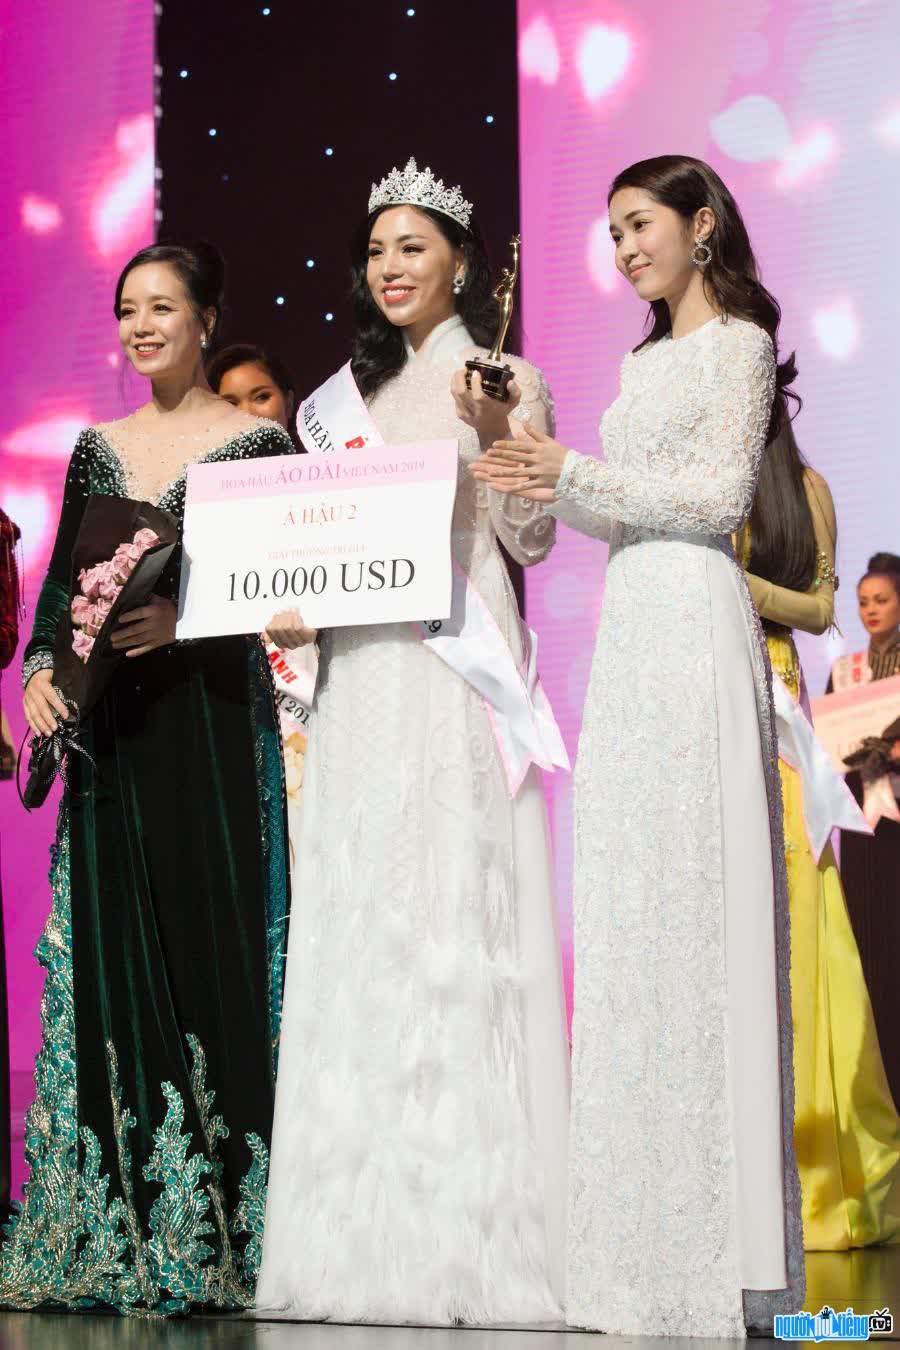 Nguyễn Thu Hương đăng quang Á hậu 2 cuộc thi Hoa hậu Áo dài 2019